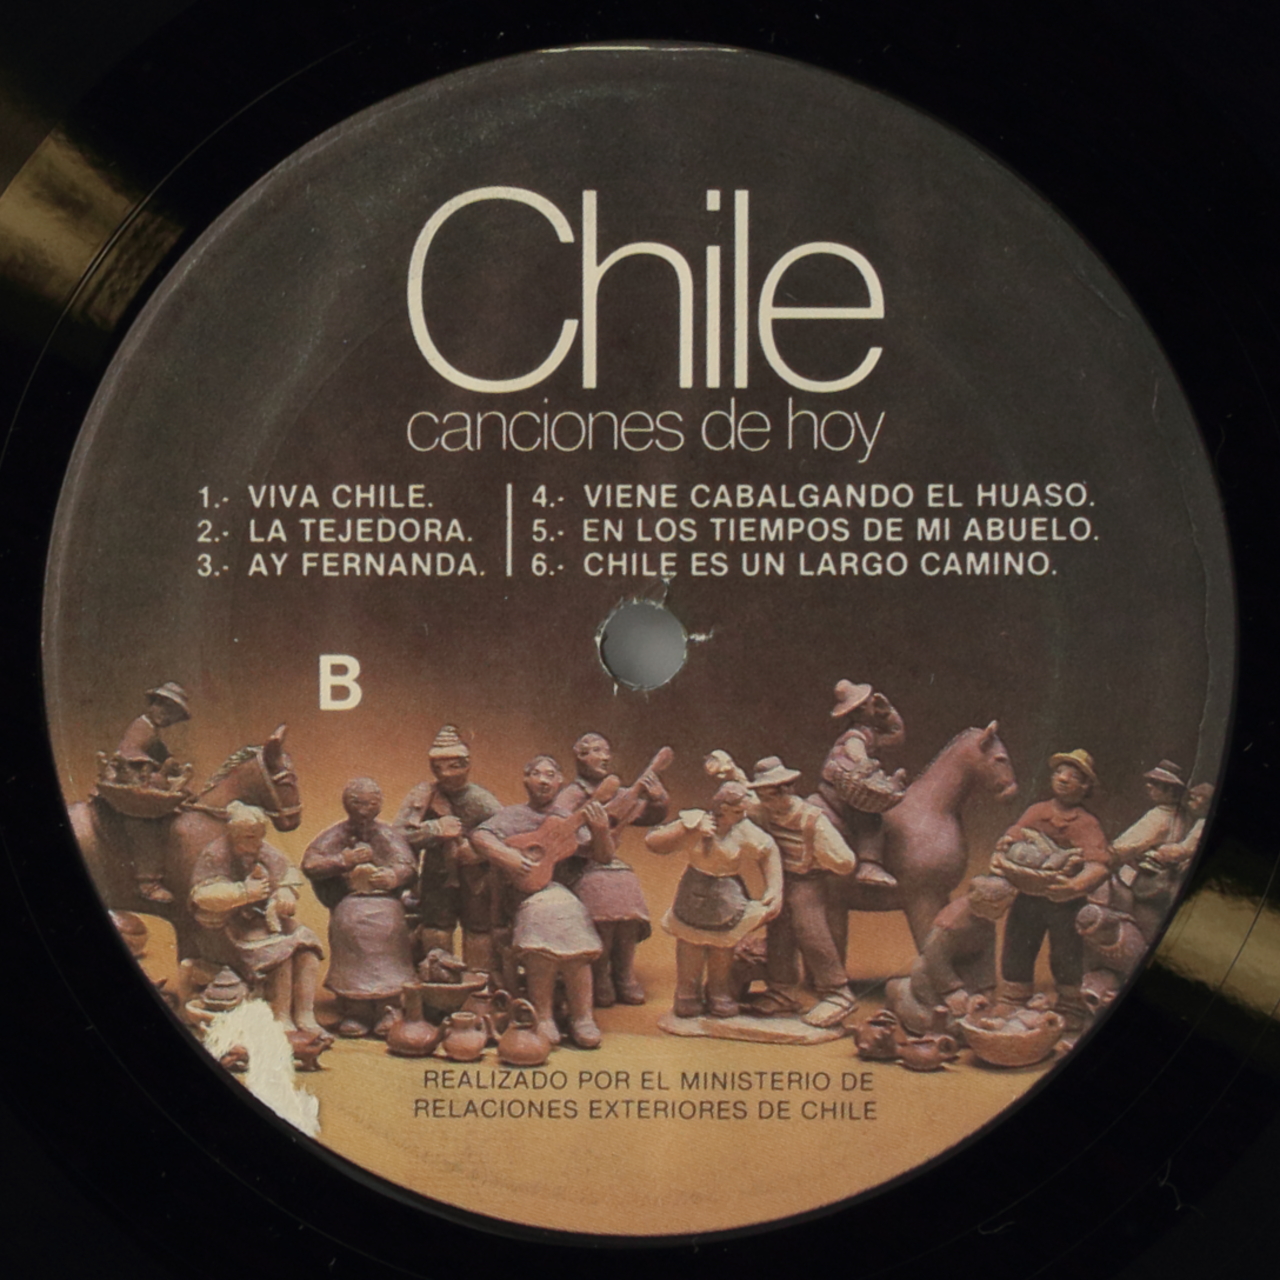 Chile: Canciones de hoy